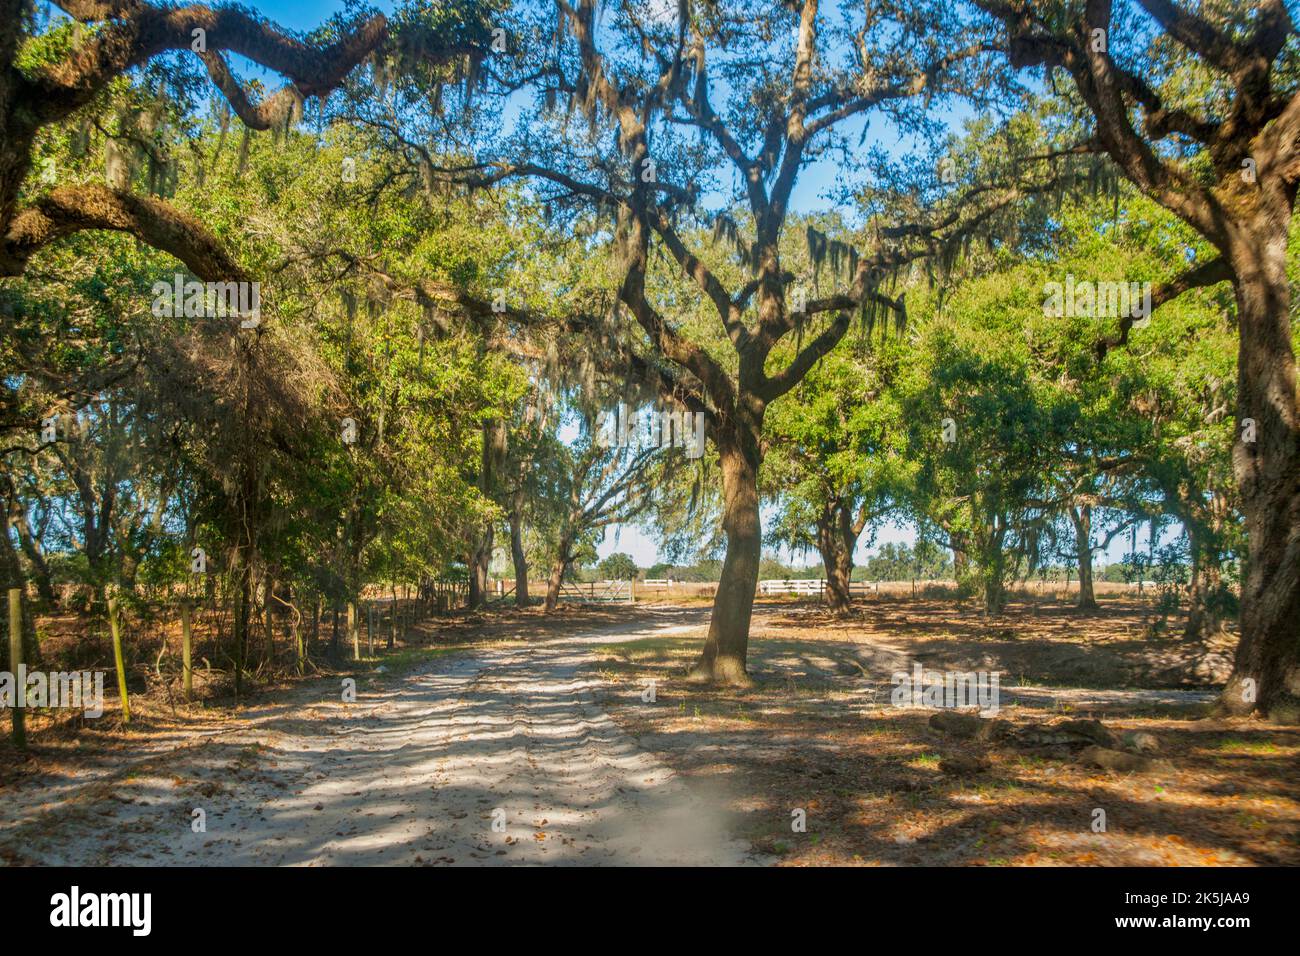 Eine unbefestigte Straße führt durch einen Eichenwald in Masaryktown, dem ländlichen Zentrum Floridas. Stockfoto